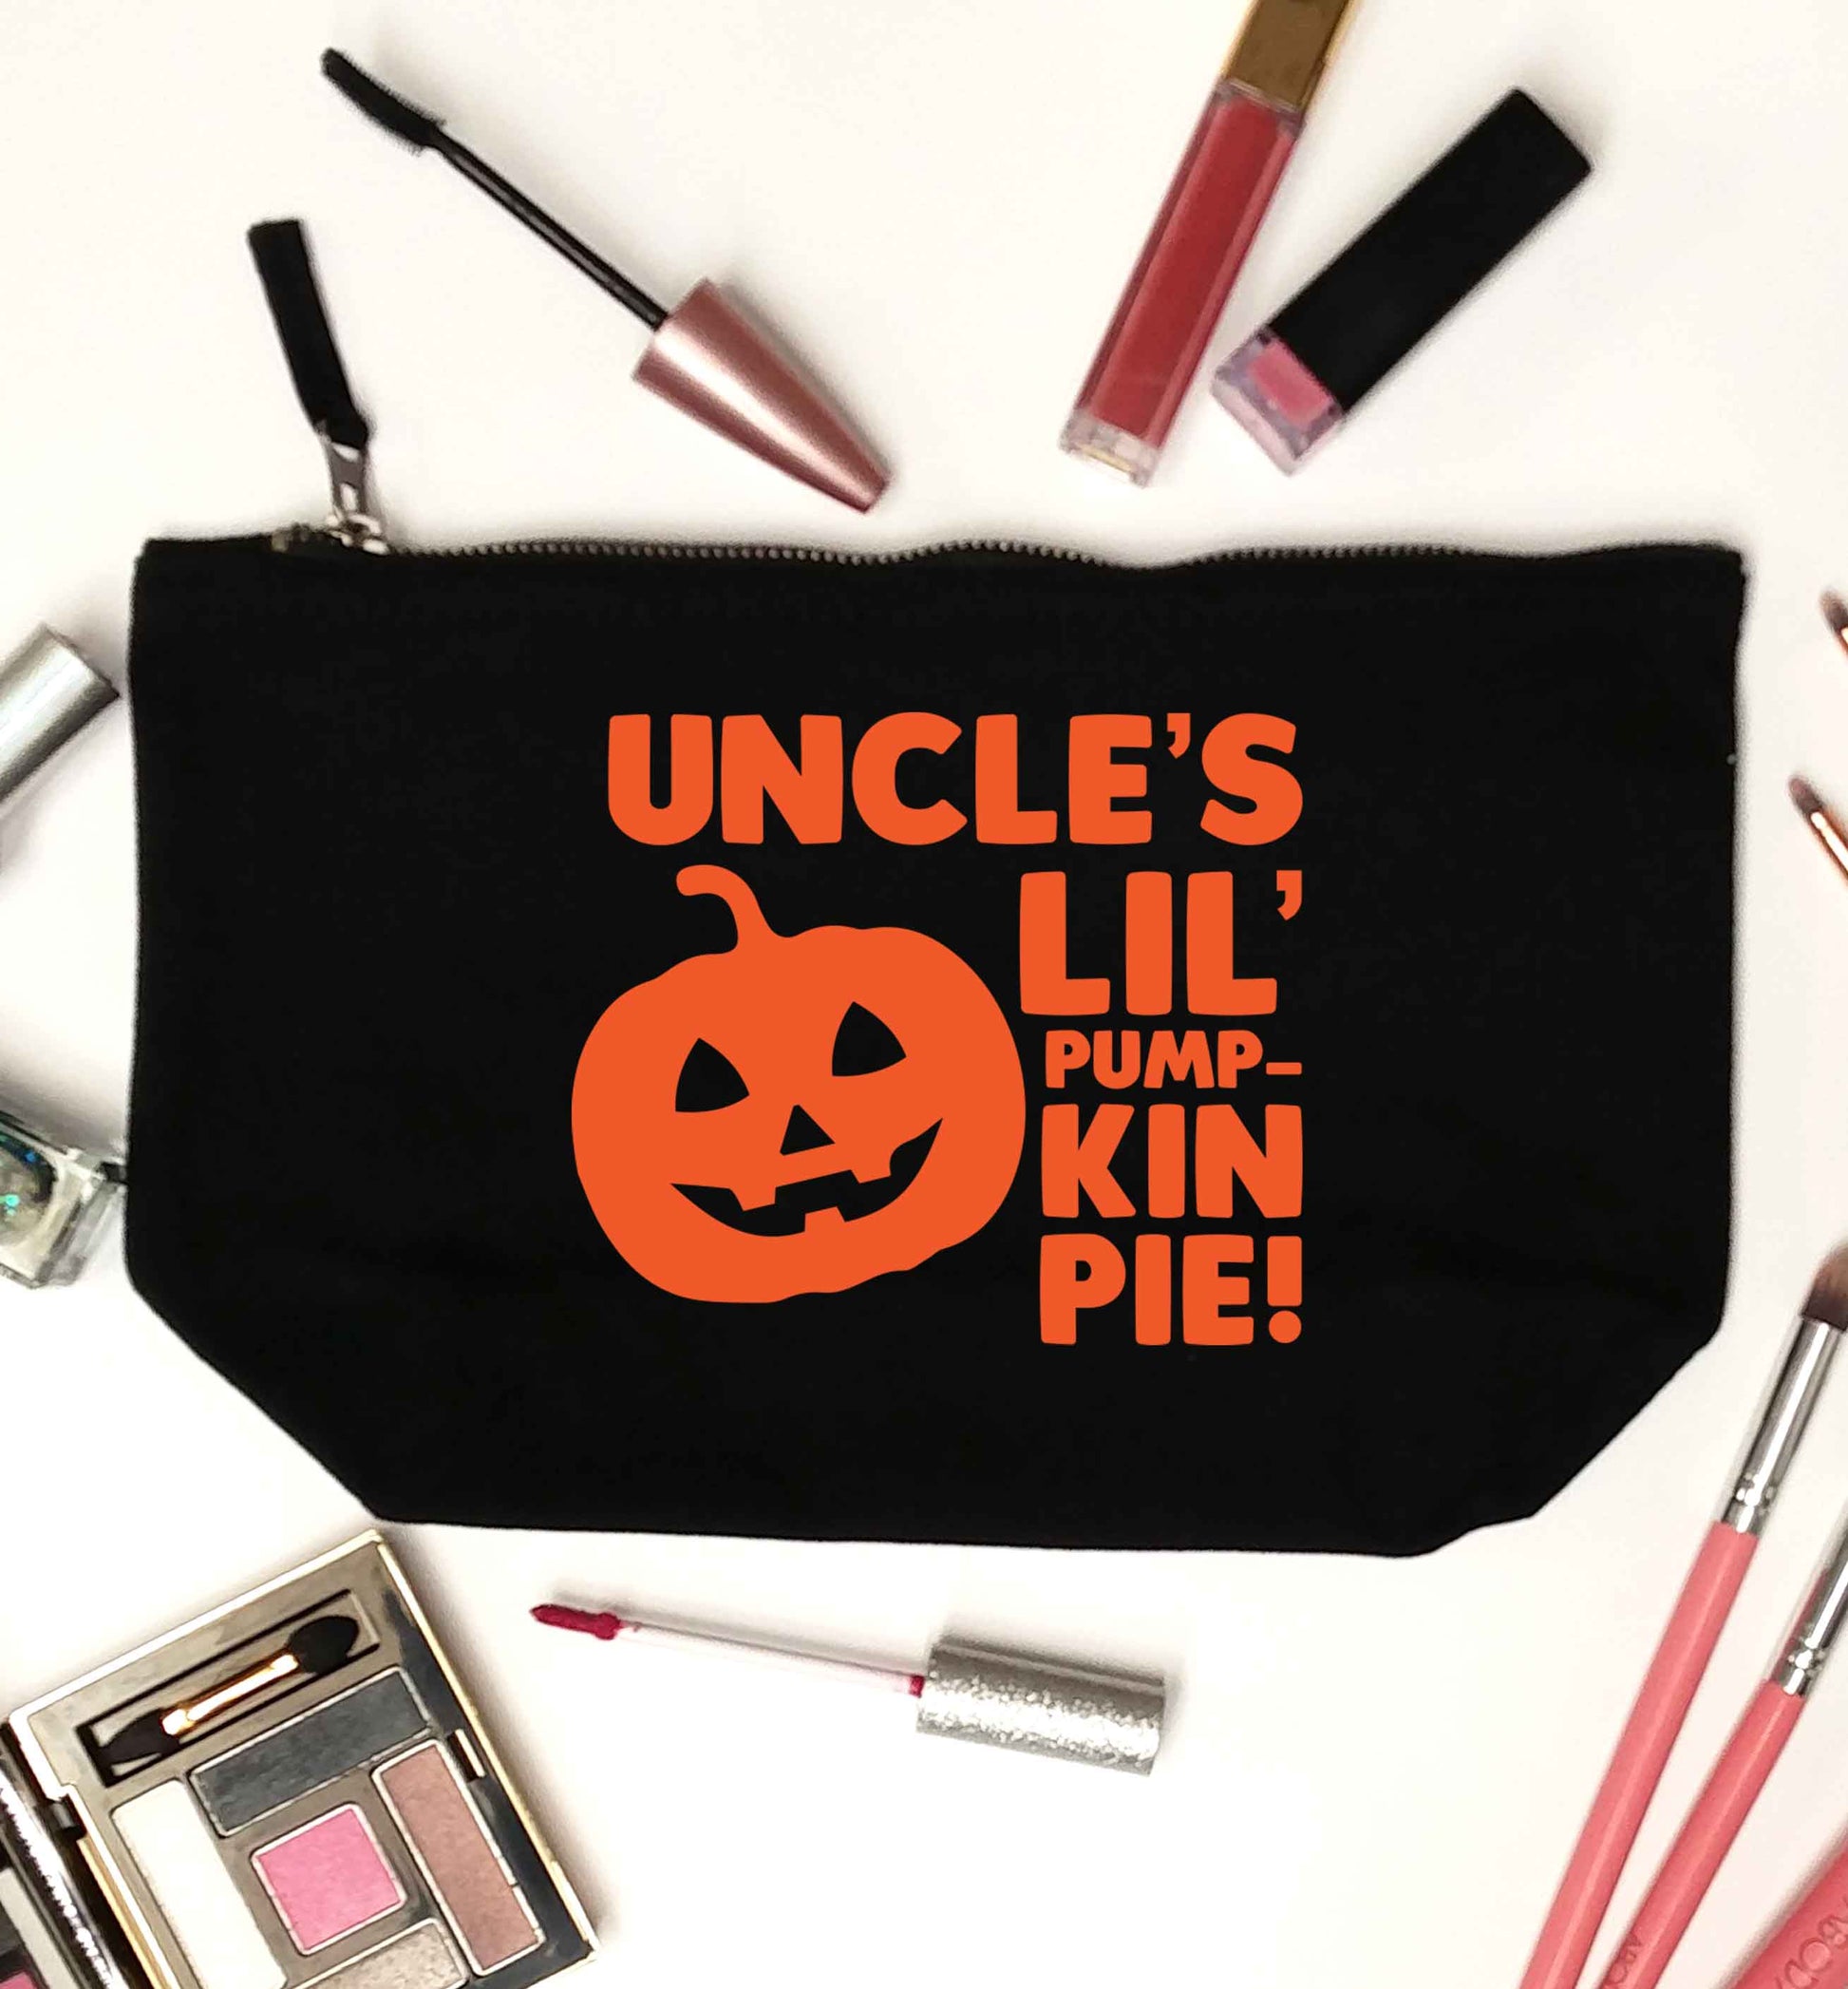 Uncle's lil' pumpkin pie black makeup bag